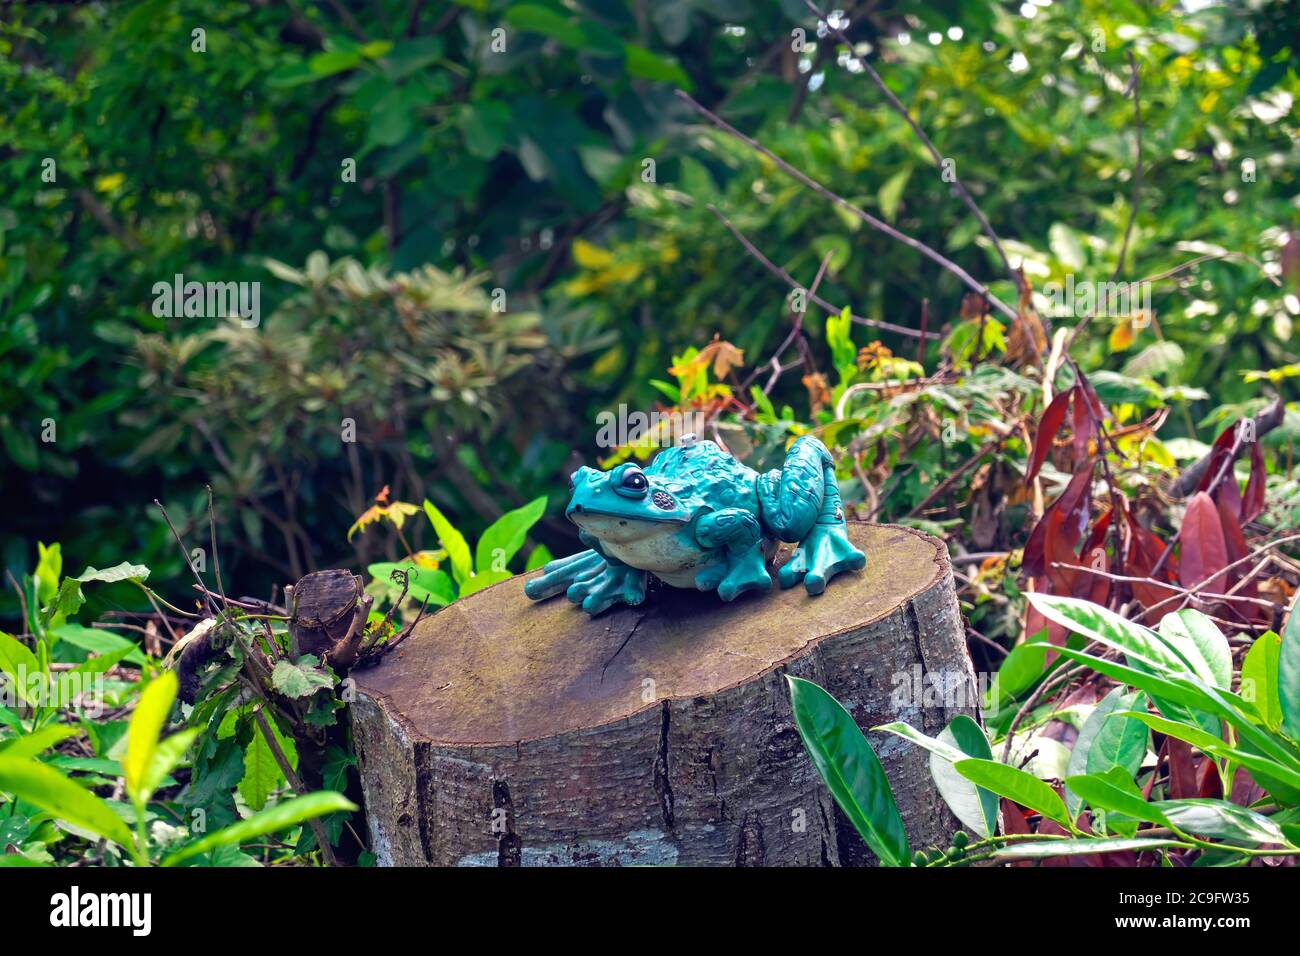 Une grenouille de jardin turquoise ornementale assise sur une souche d'arbre avec des arbustes en arrière-plan. Banque D'Images